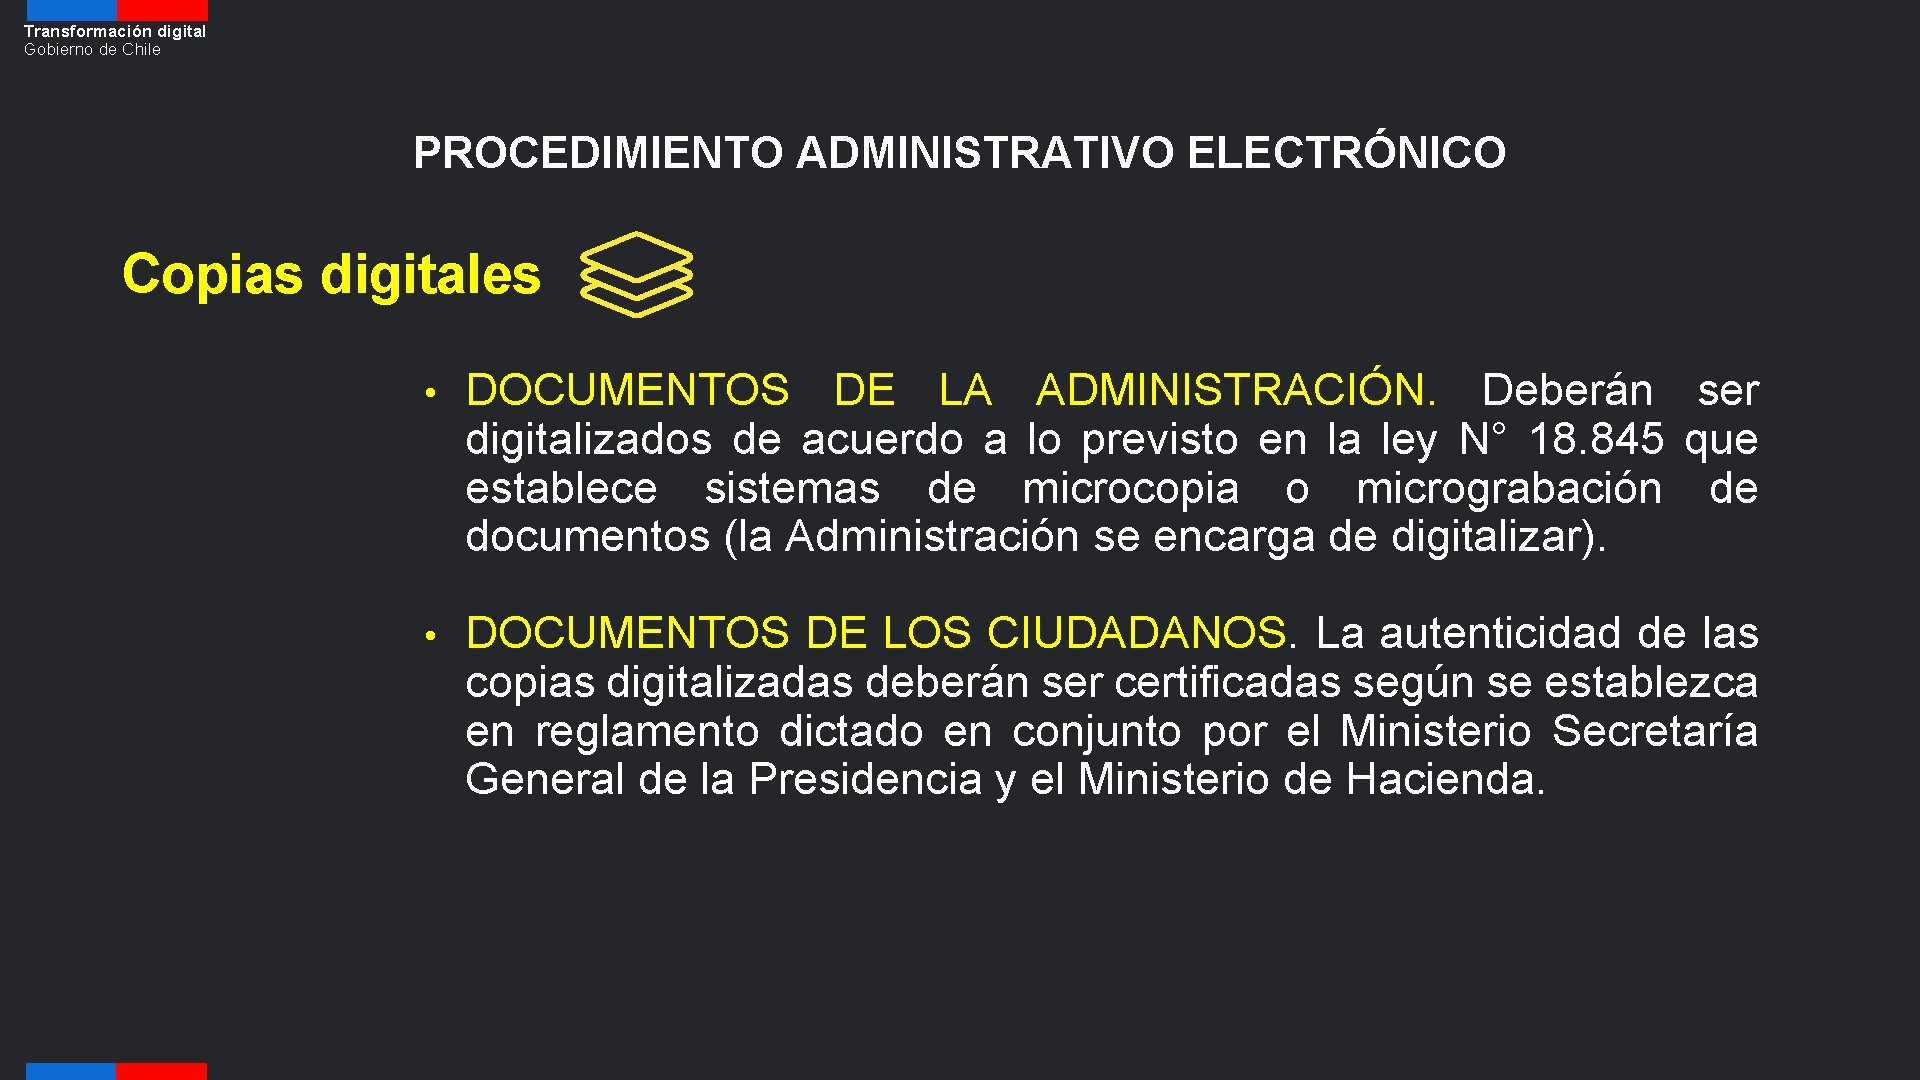 Transformación digital Gobierno de Chile PROCEDIMIENTO ADMINISTRATIVO ELECTRÓNICO Copias digitales • DOCUMENTOS DE LA